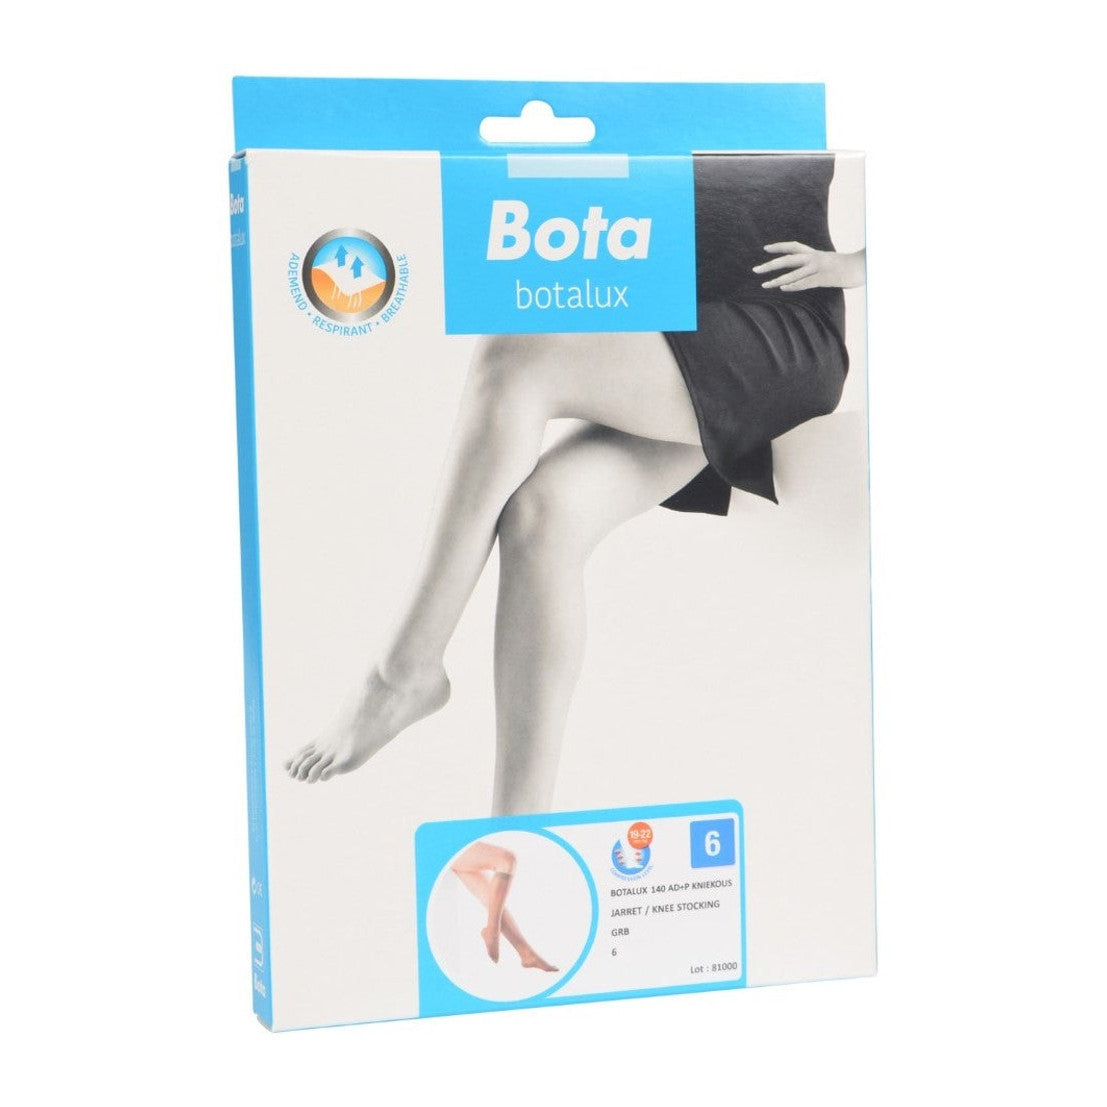 Botalux 140 below knee ad+p grb gray beige